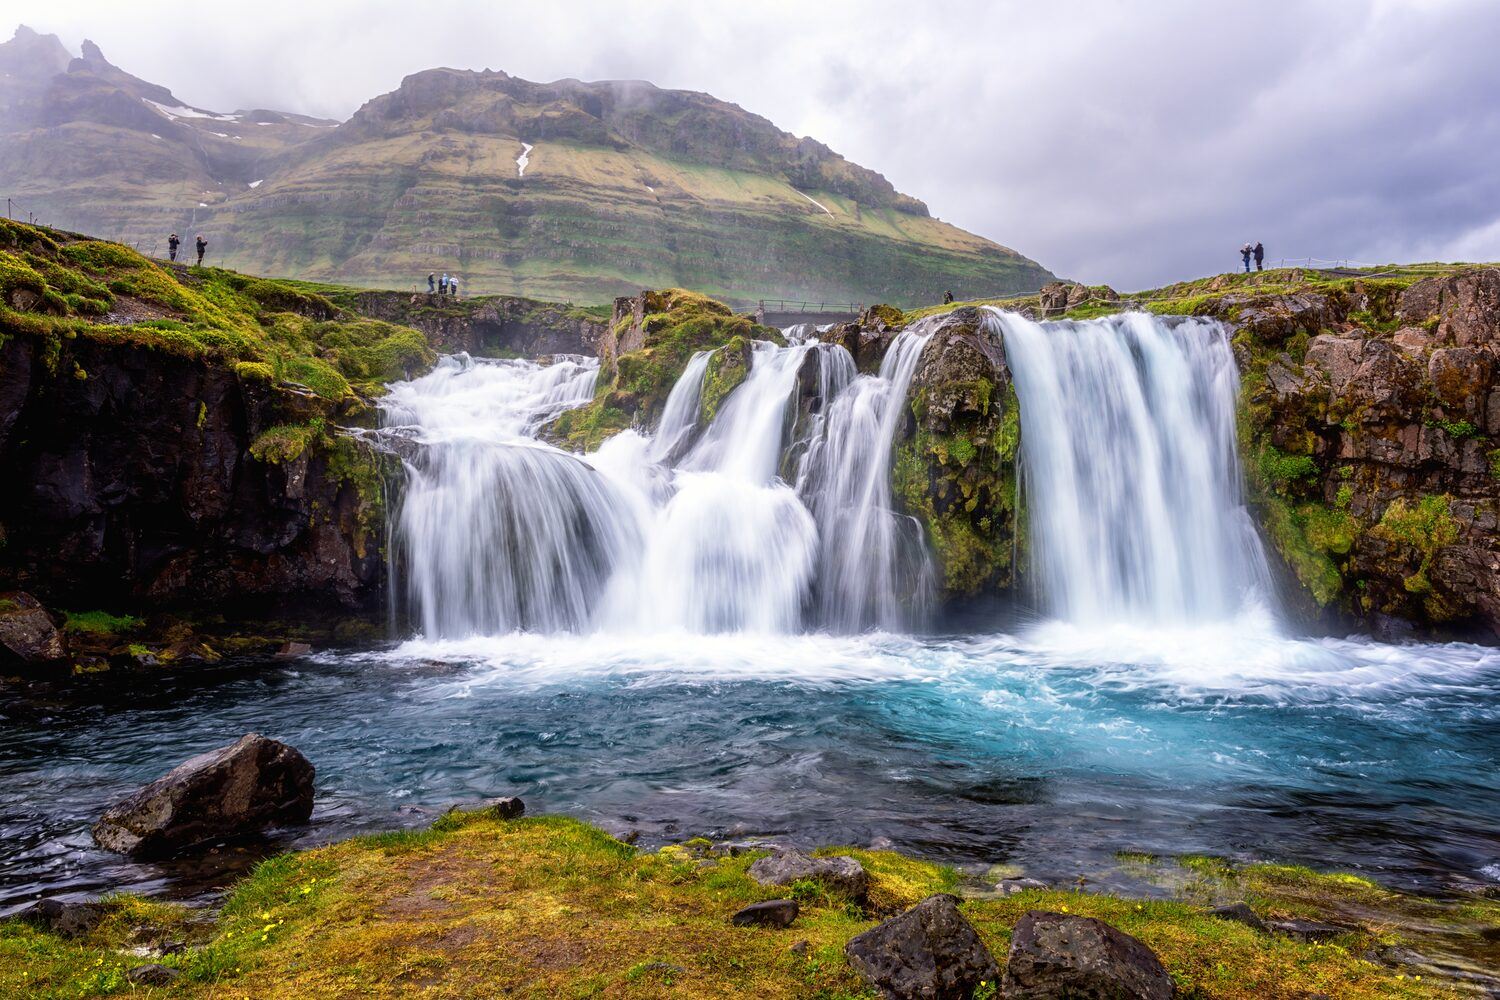 Kirkjufellsfoss waterfall with tourists standing around the edge admiring.